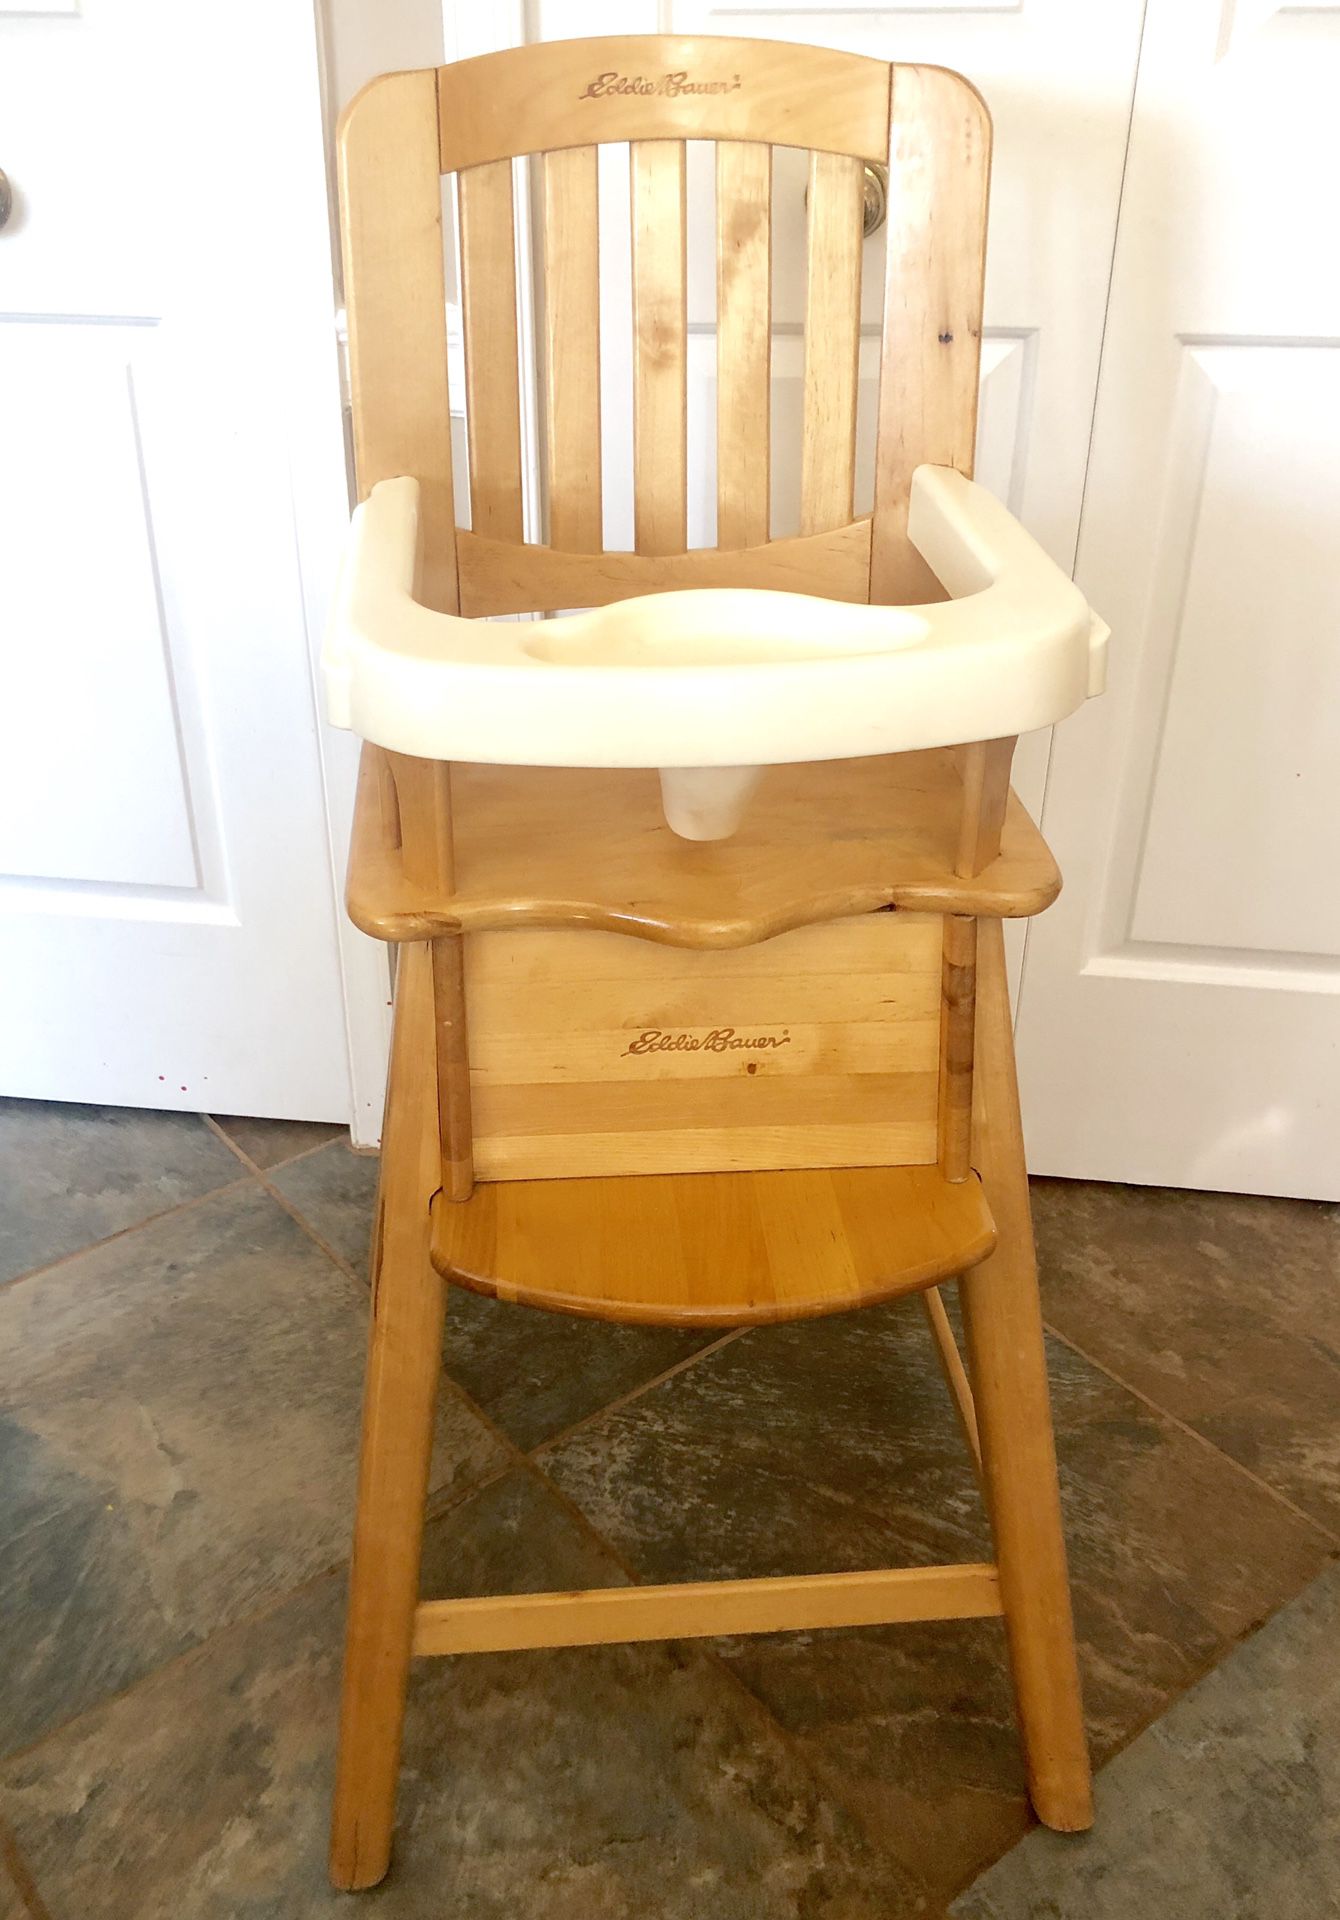 Wooden High Chair by Eddie Bauer